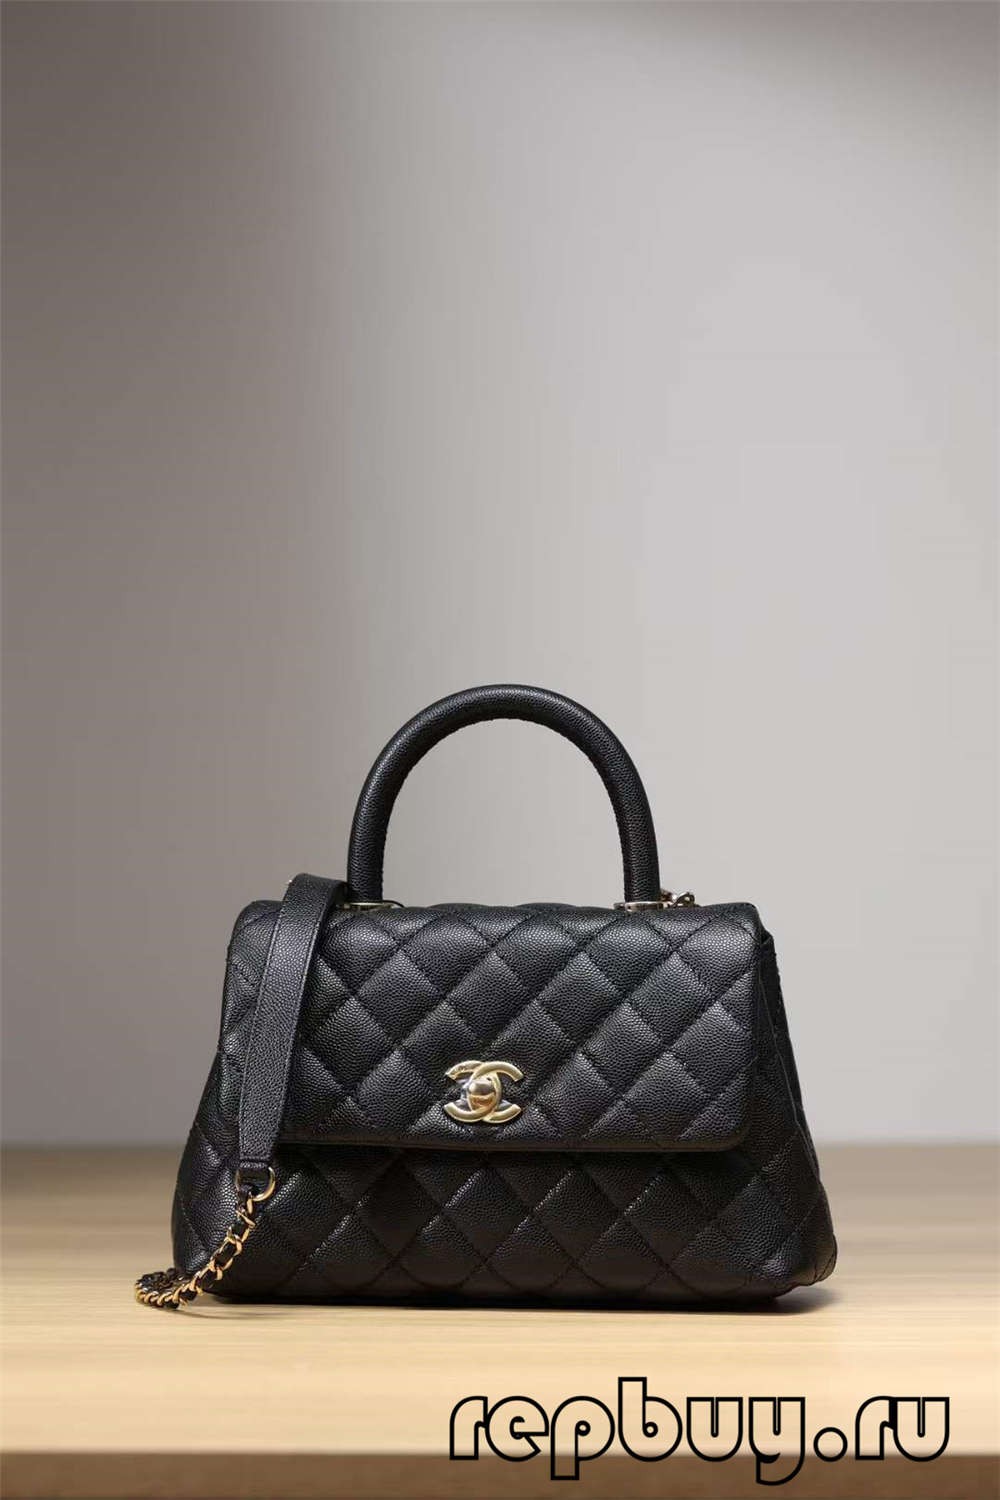 Chanel Coco Handle Top Replica Handbag Black Gold Buckle Look (2022 Updated)-Kedai Dalam Talian Beg Louis Vuitton Palsu Kualiti Terbaik, Beg berjenama replika ru